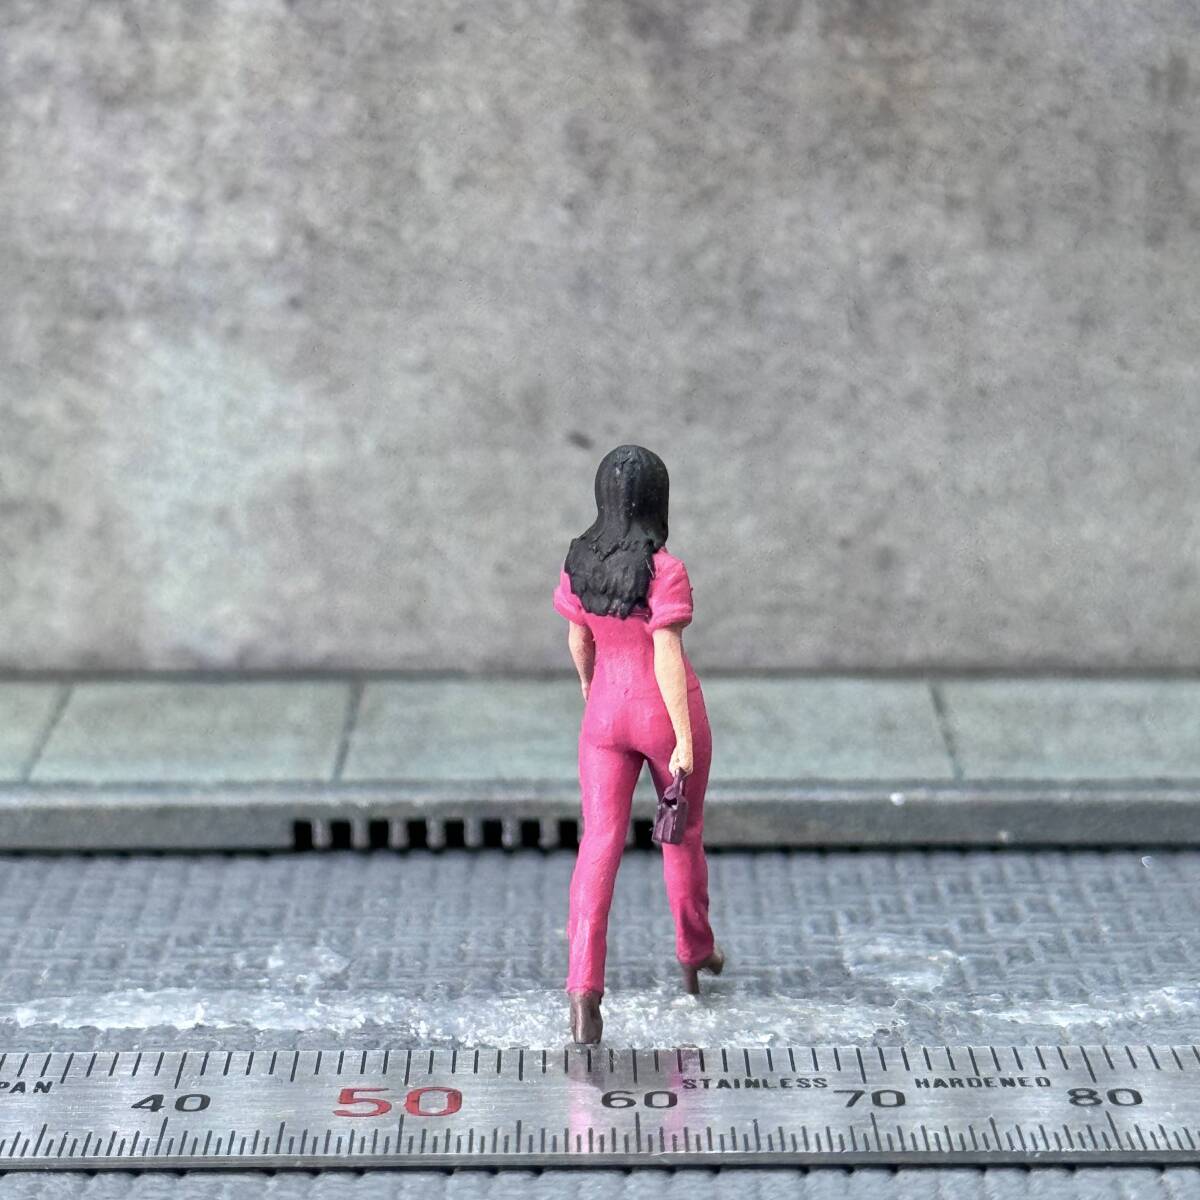 【CJ-458】1/64 スケール ピンクのつなぎを着た女性 フィギュア ミニチュア ジオラマ ミニカー トミカ_画像4